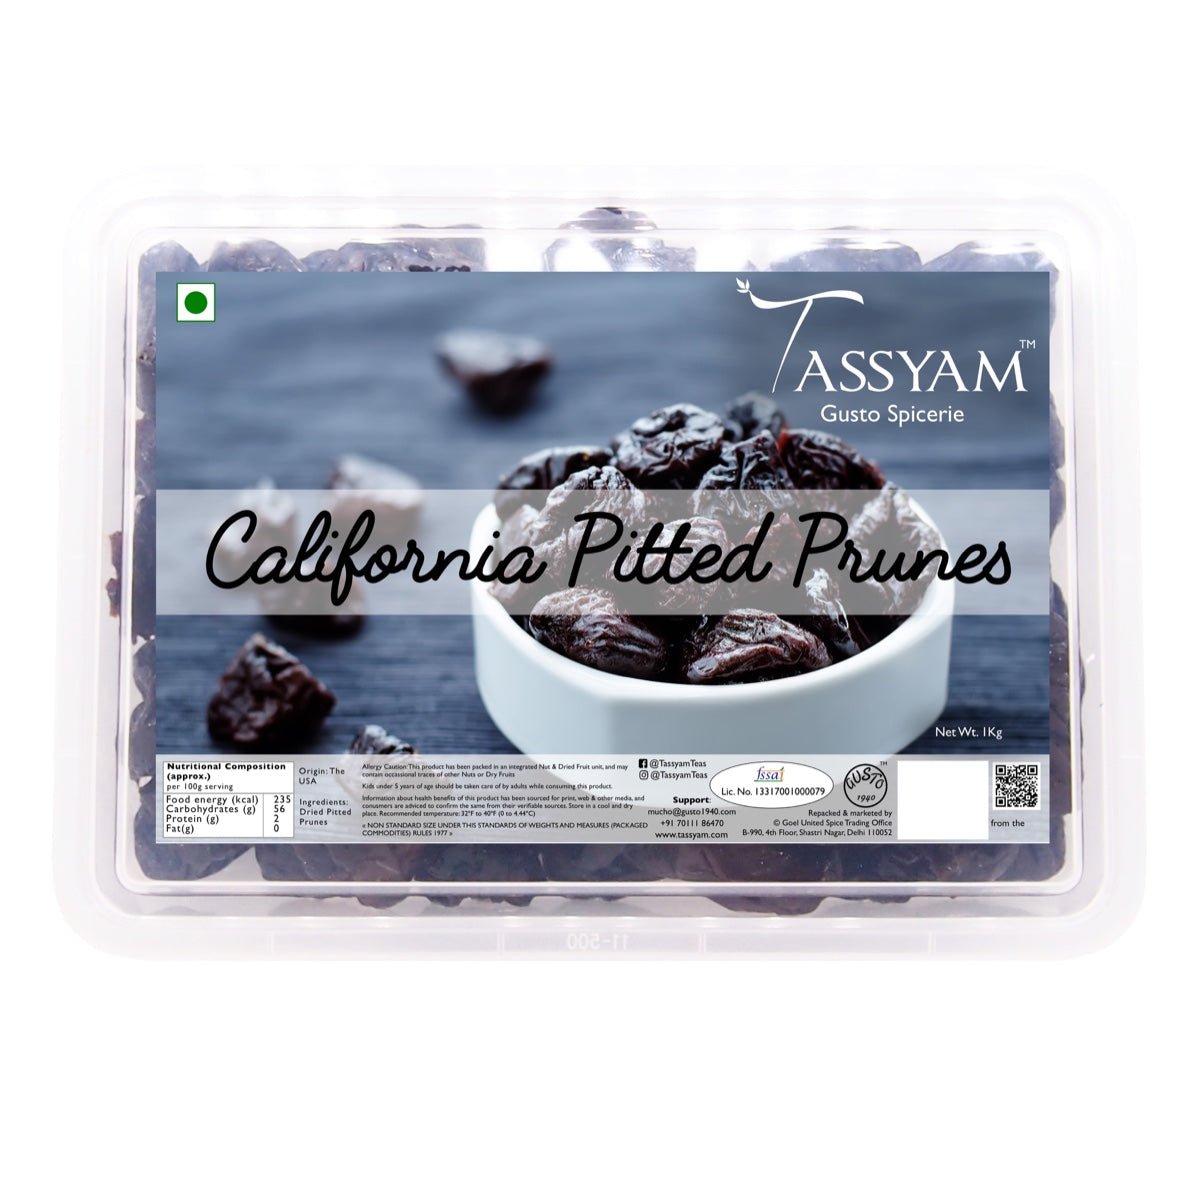 Pitted Prunes - Tassyam Organics